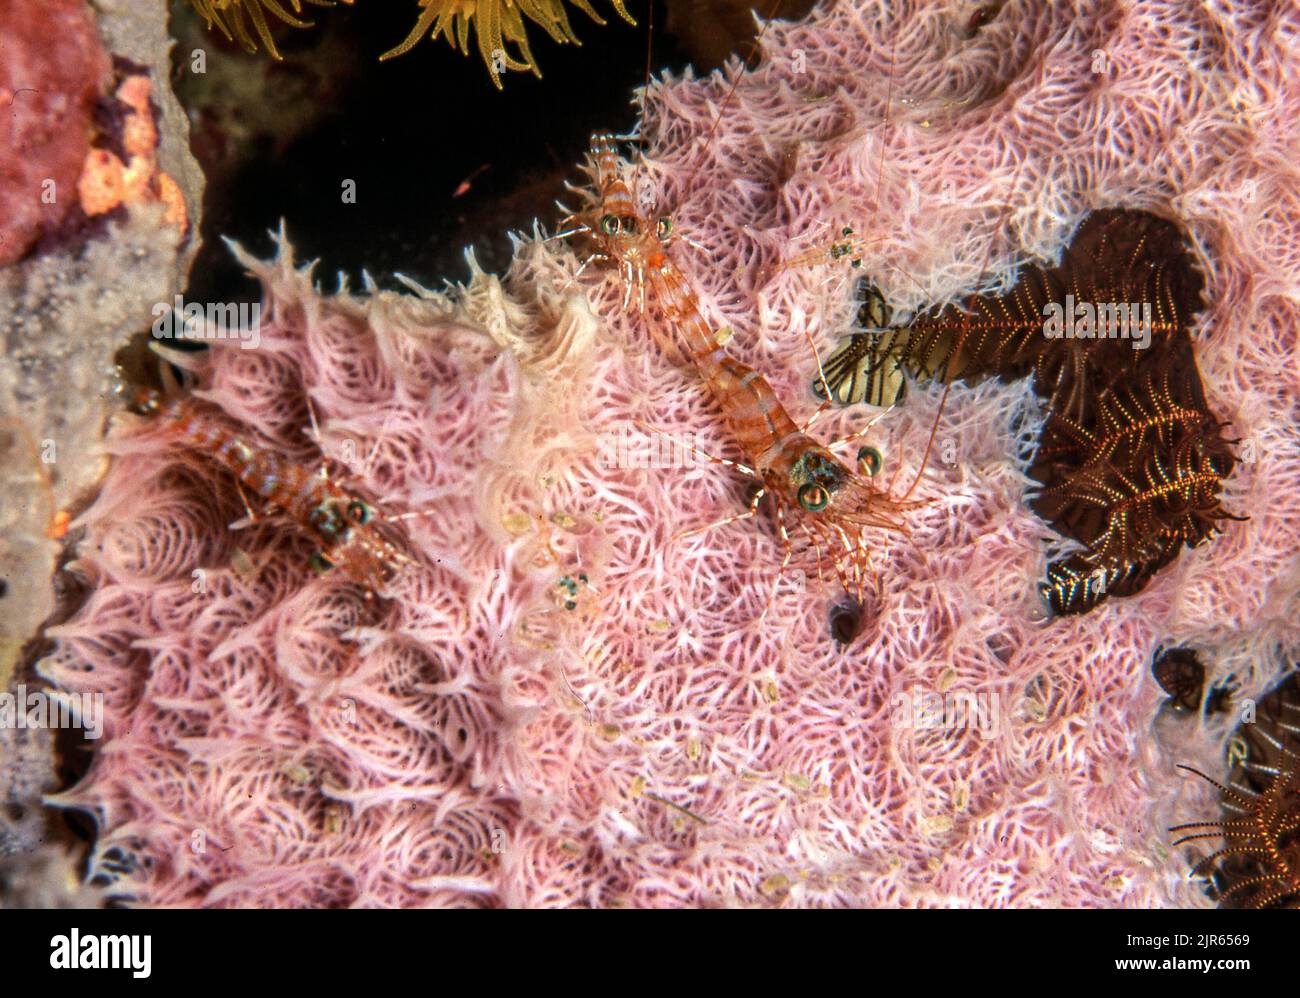 Hinge-beak shrimps (Cinetorhynchus  sp.) from Bunaken, North Sulawesi, Indonesia. Stock Photo